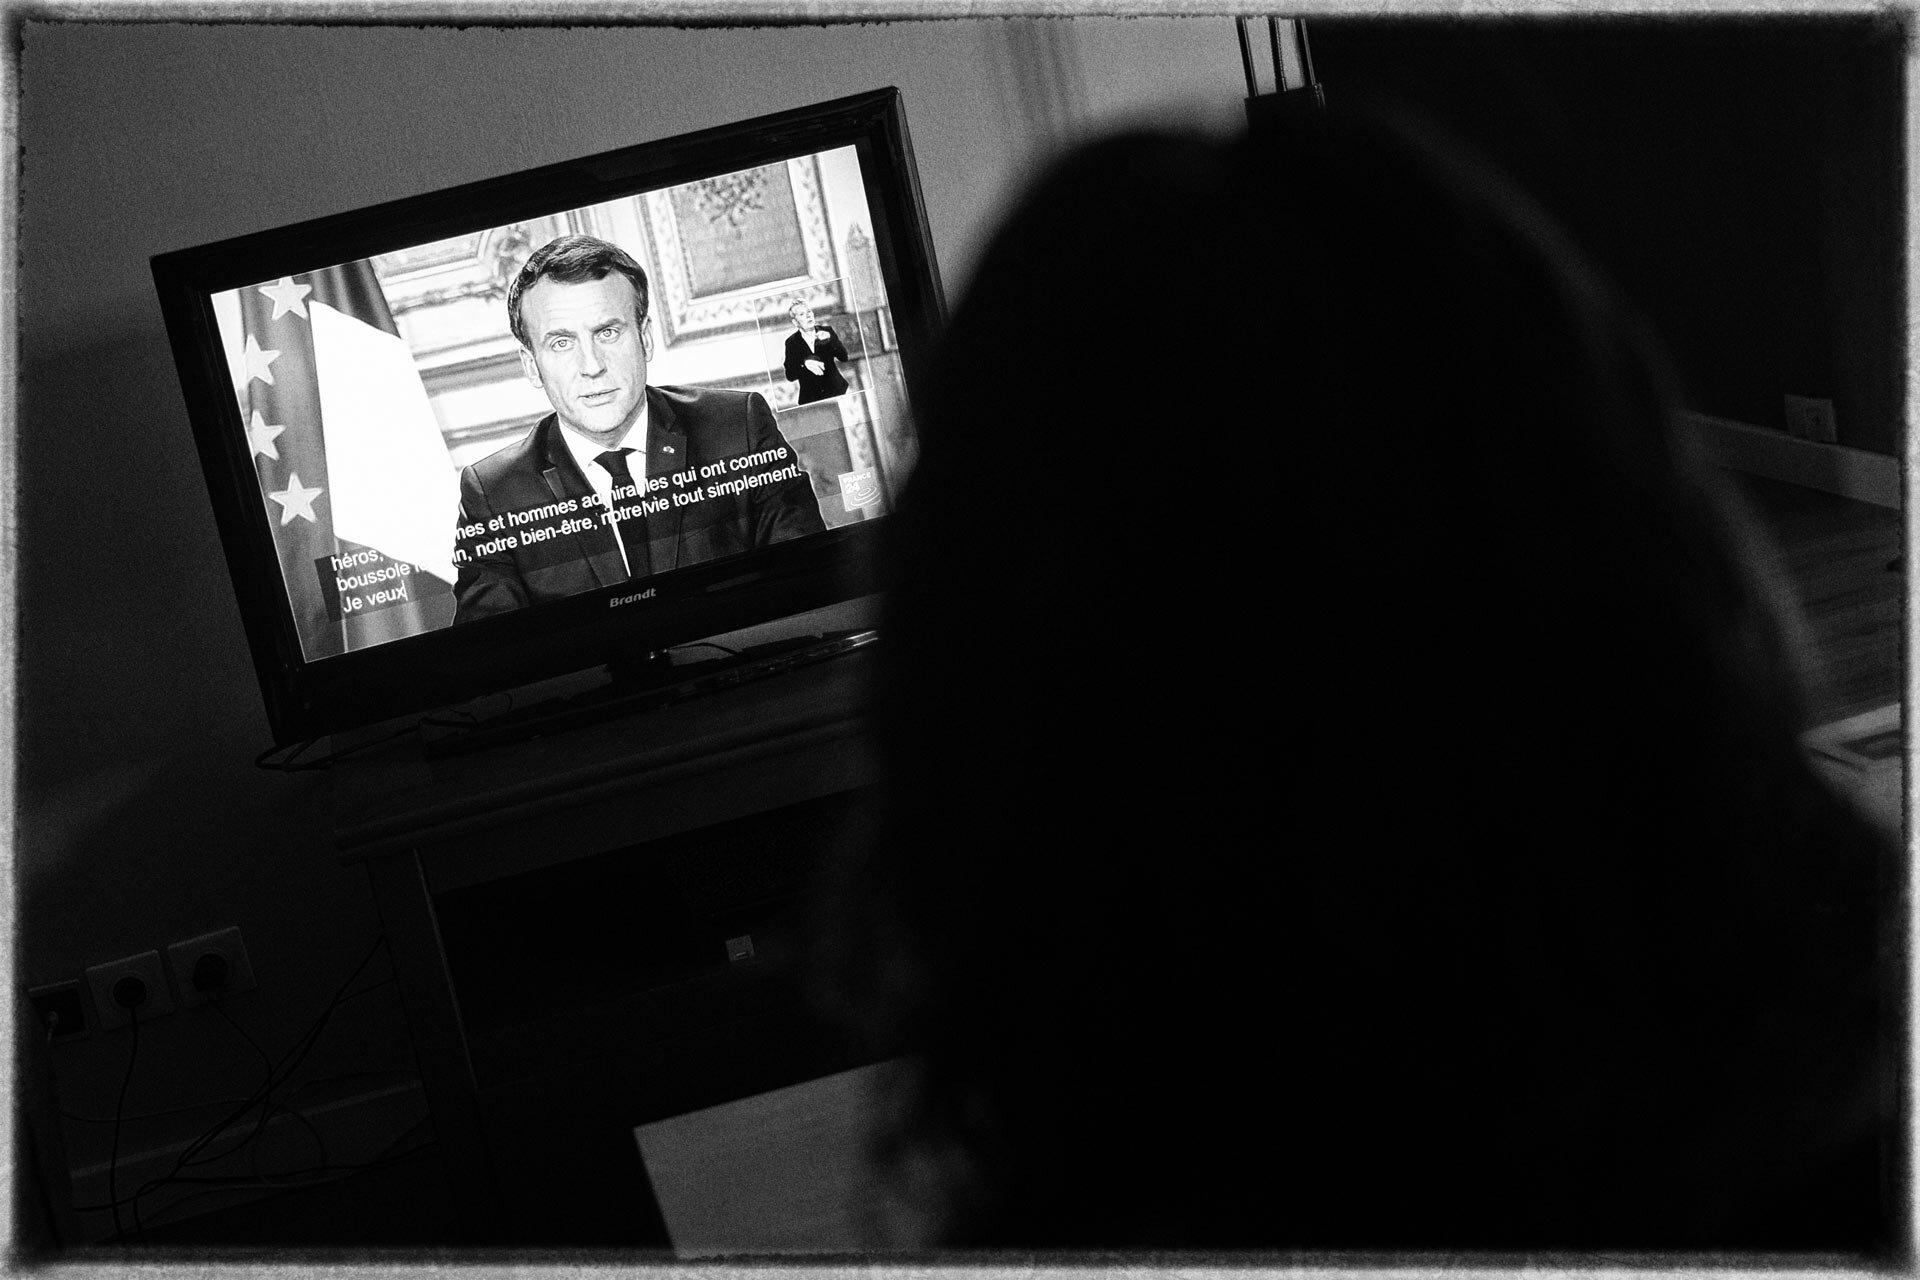 Télévision montrant le discours présidentiel du 12 mars, sur la fermeture des établissements scolaires à cause du coronavirus.